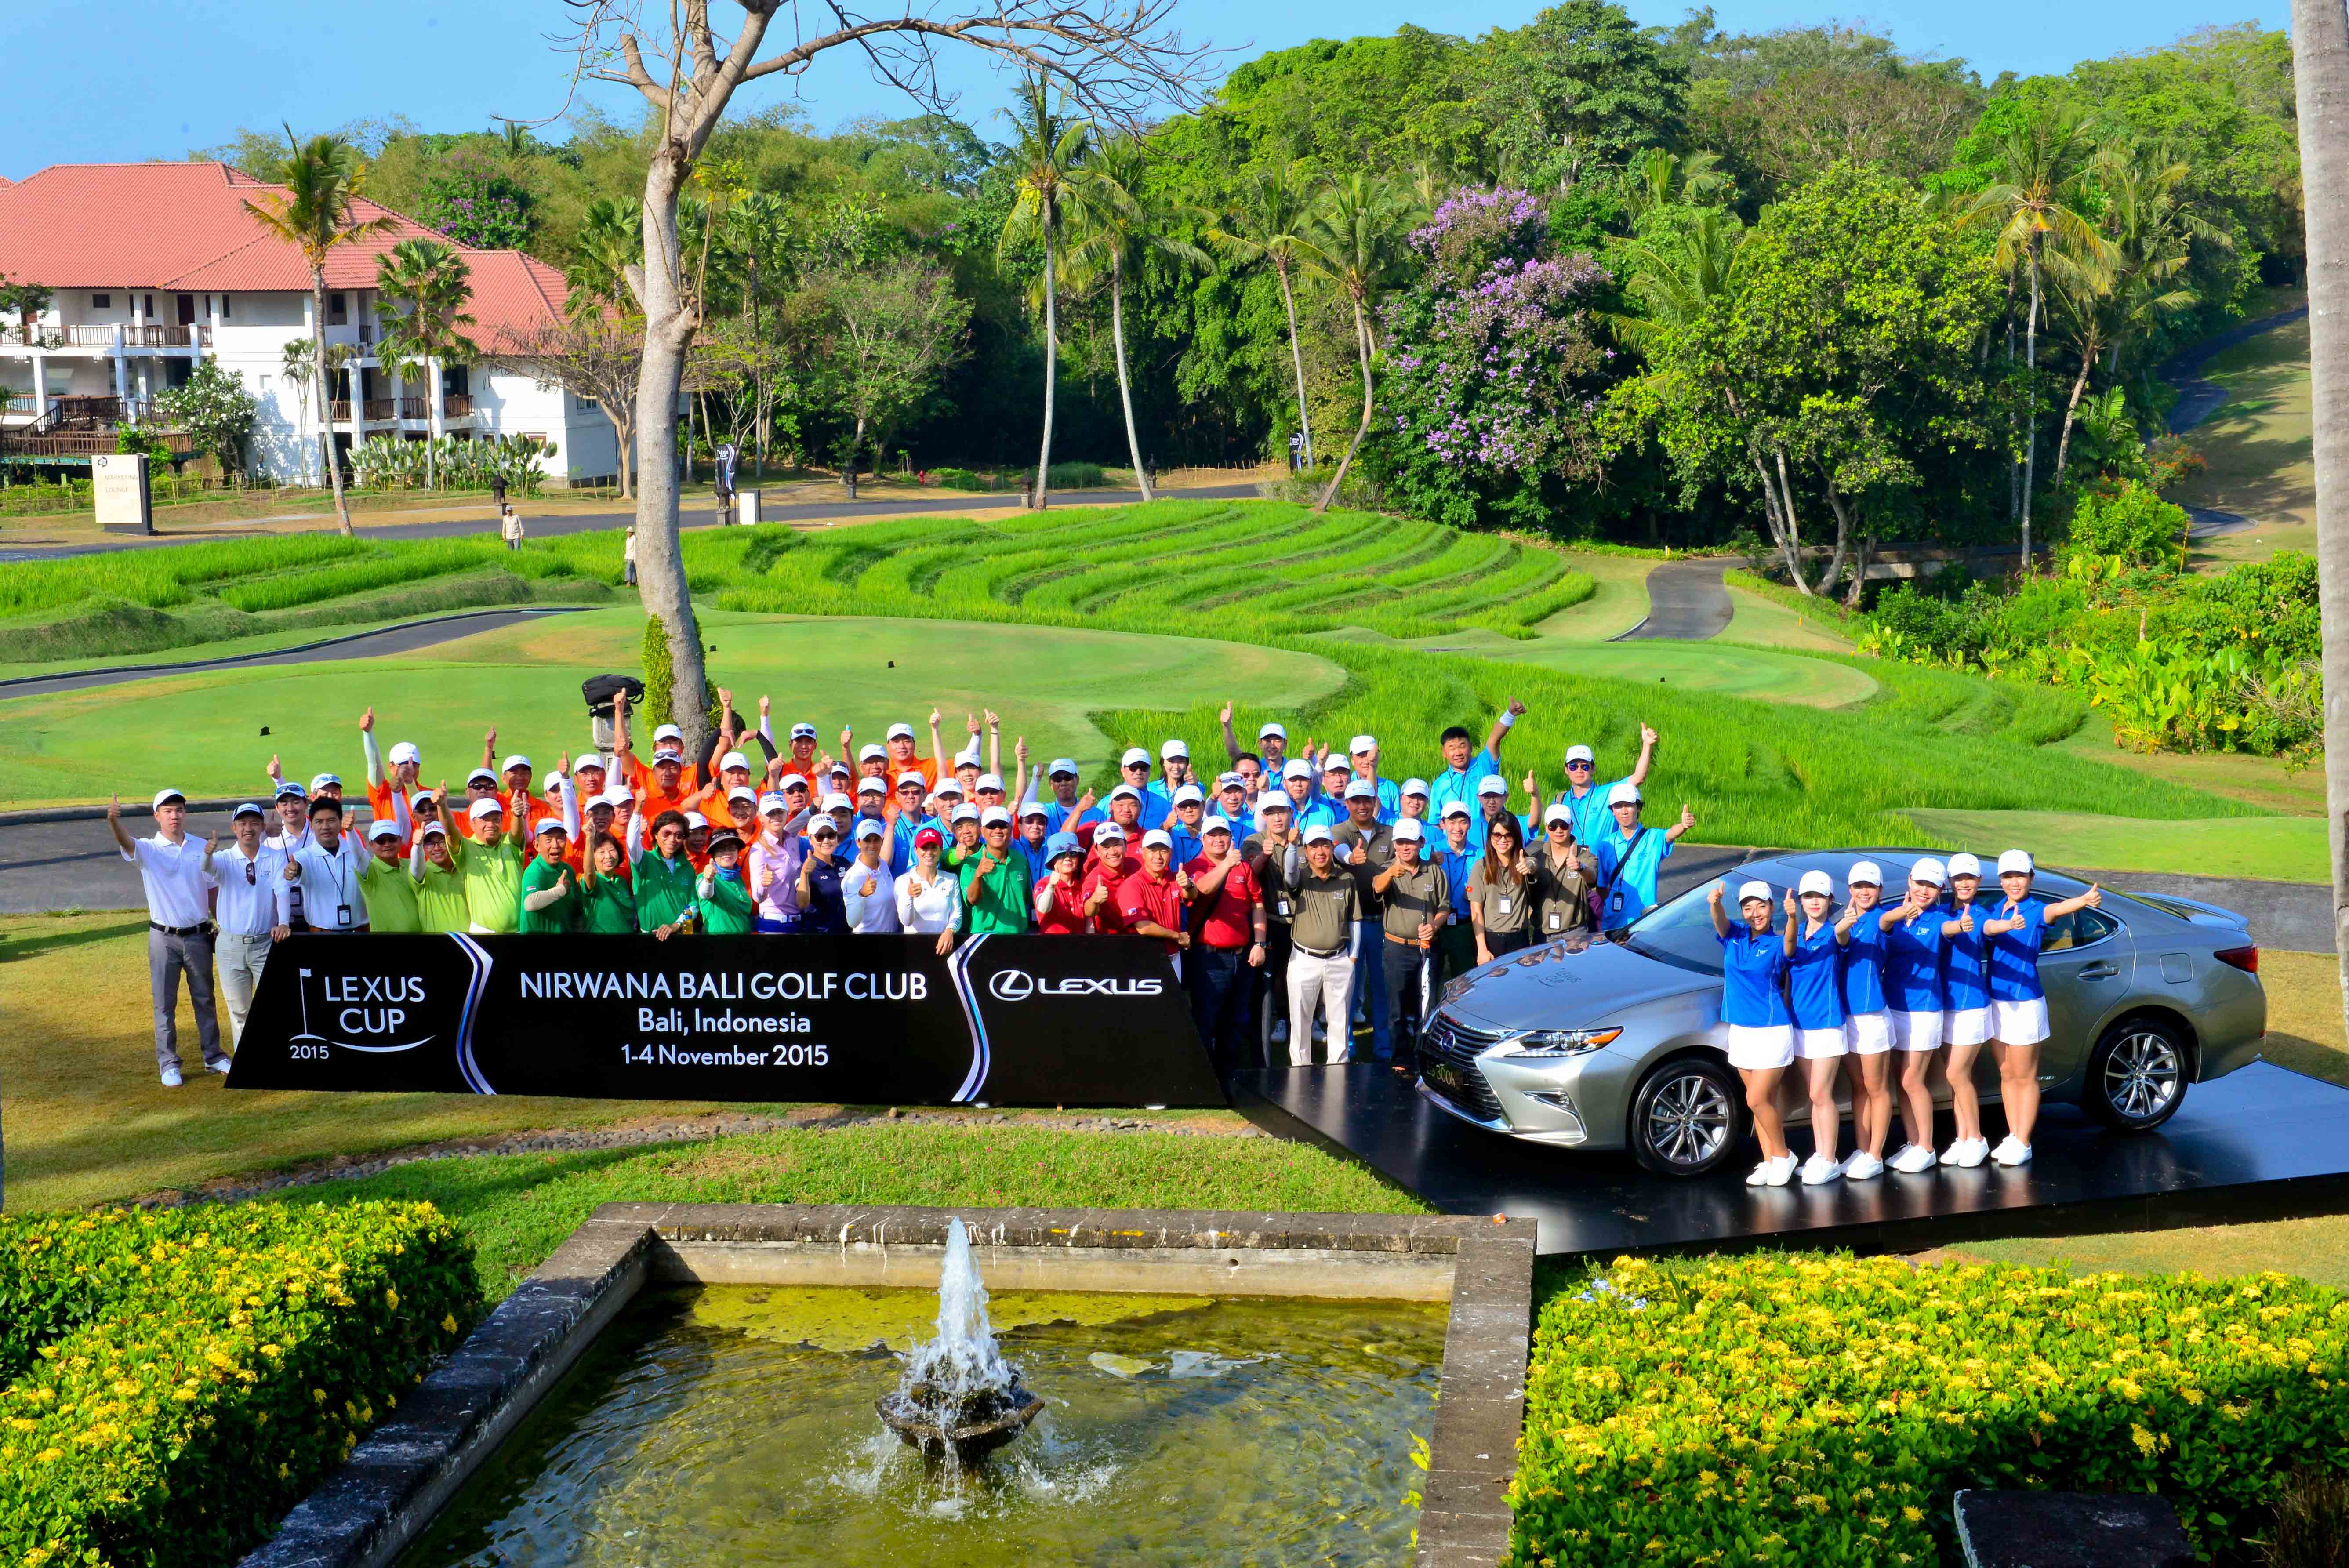 Golf thủ Việt giành giải lớn tại Lexus Cup châu Á 2015